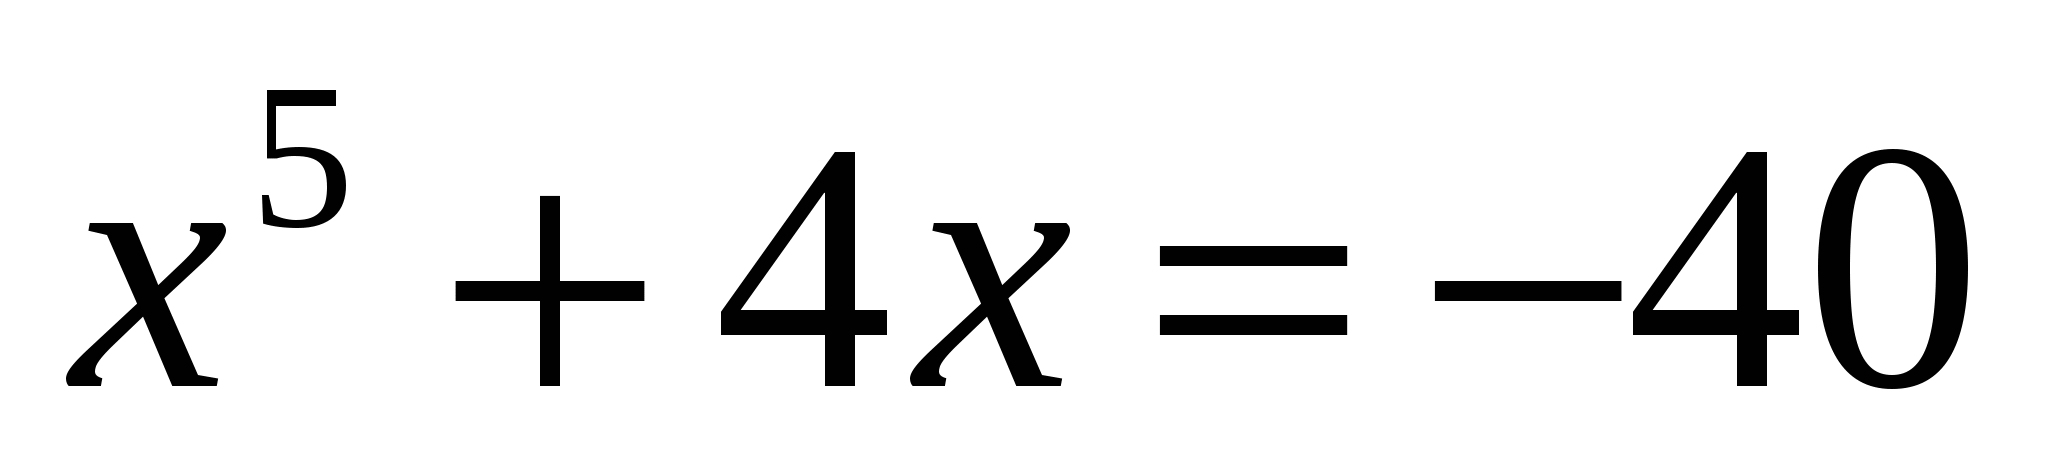 Конспект уроков по математике для студентов техникума 1 курса на тему Нестандартные способы решения уравнений